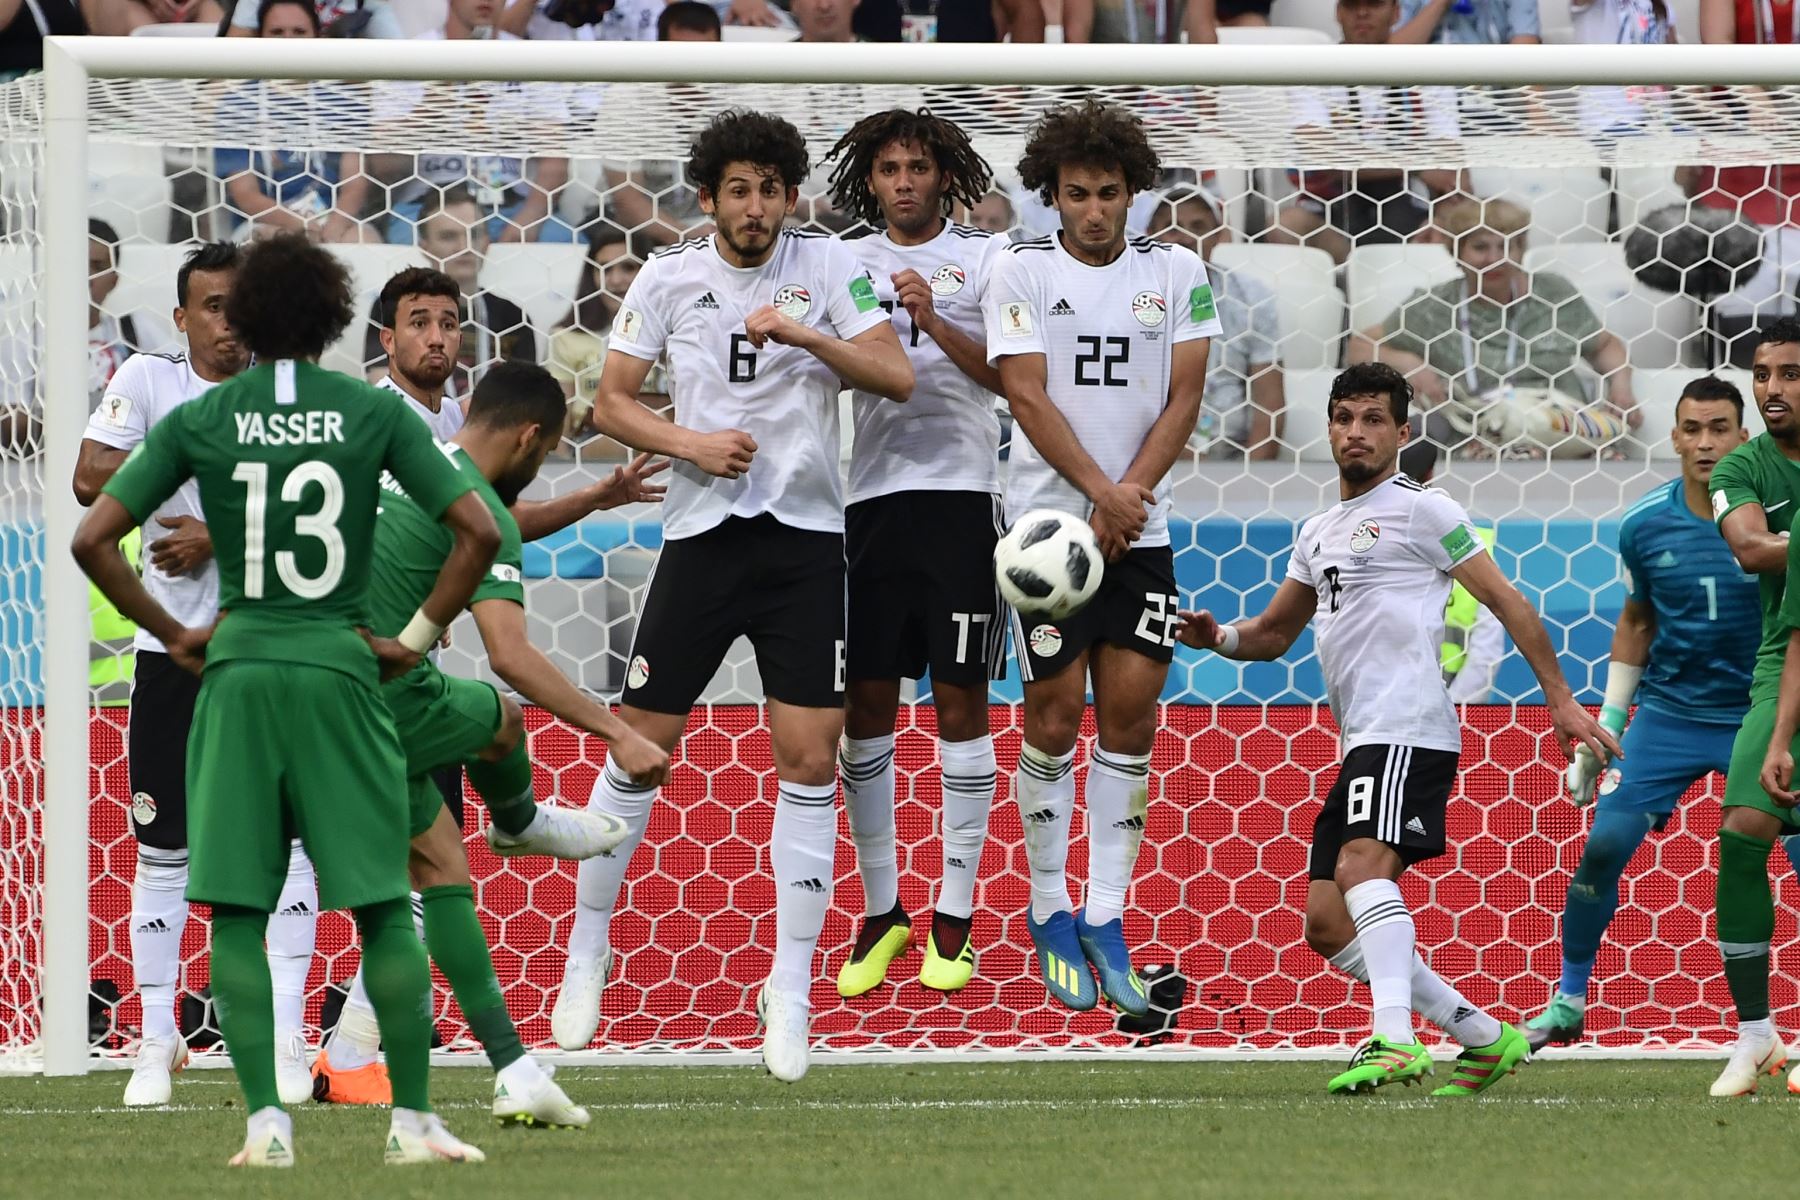 Los jugadores de Egipto detienen un tiro libre del defensor de Arabia Saudita Mohammed Al-Burayk durante el partido de fútbol del Grupo A de la Copa Mundial Rusia 2018 entre Arabia Saudita y Egipto en el Volgograd Arena de Volgogrado el 25 de junio de 2018. / AFP